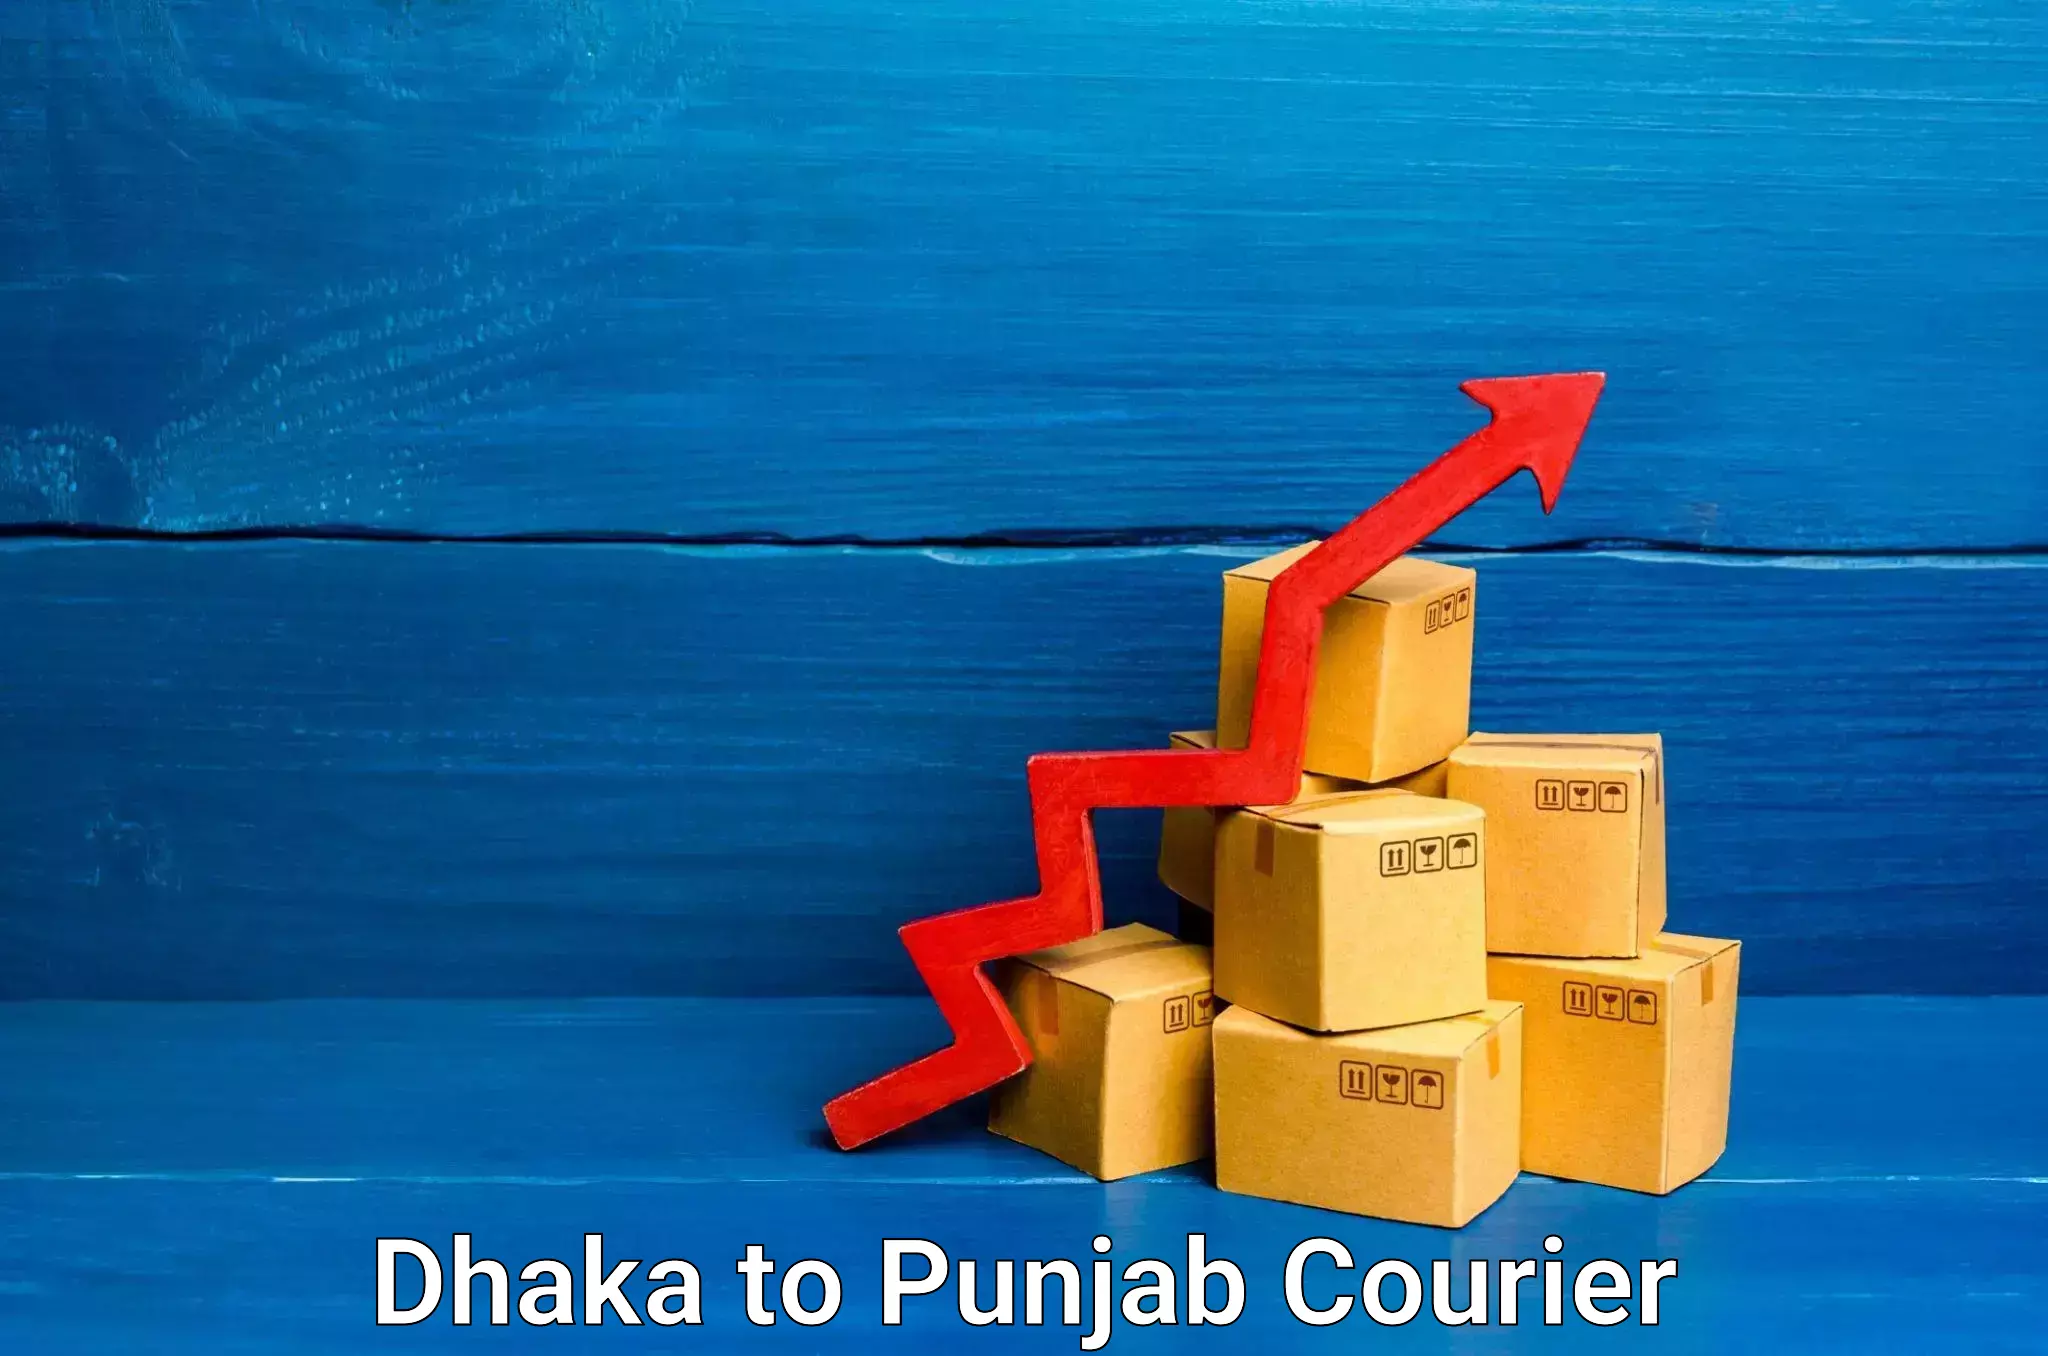 Furniture transport company Dhaka to Punjab